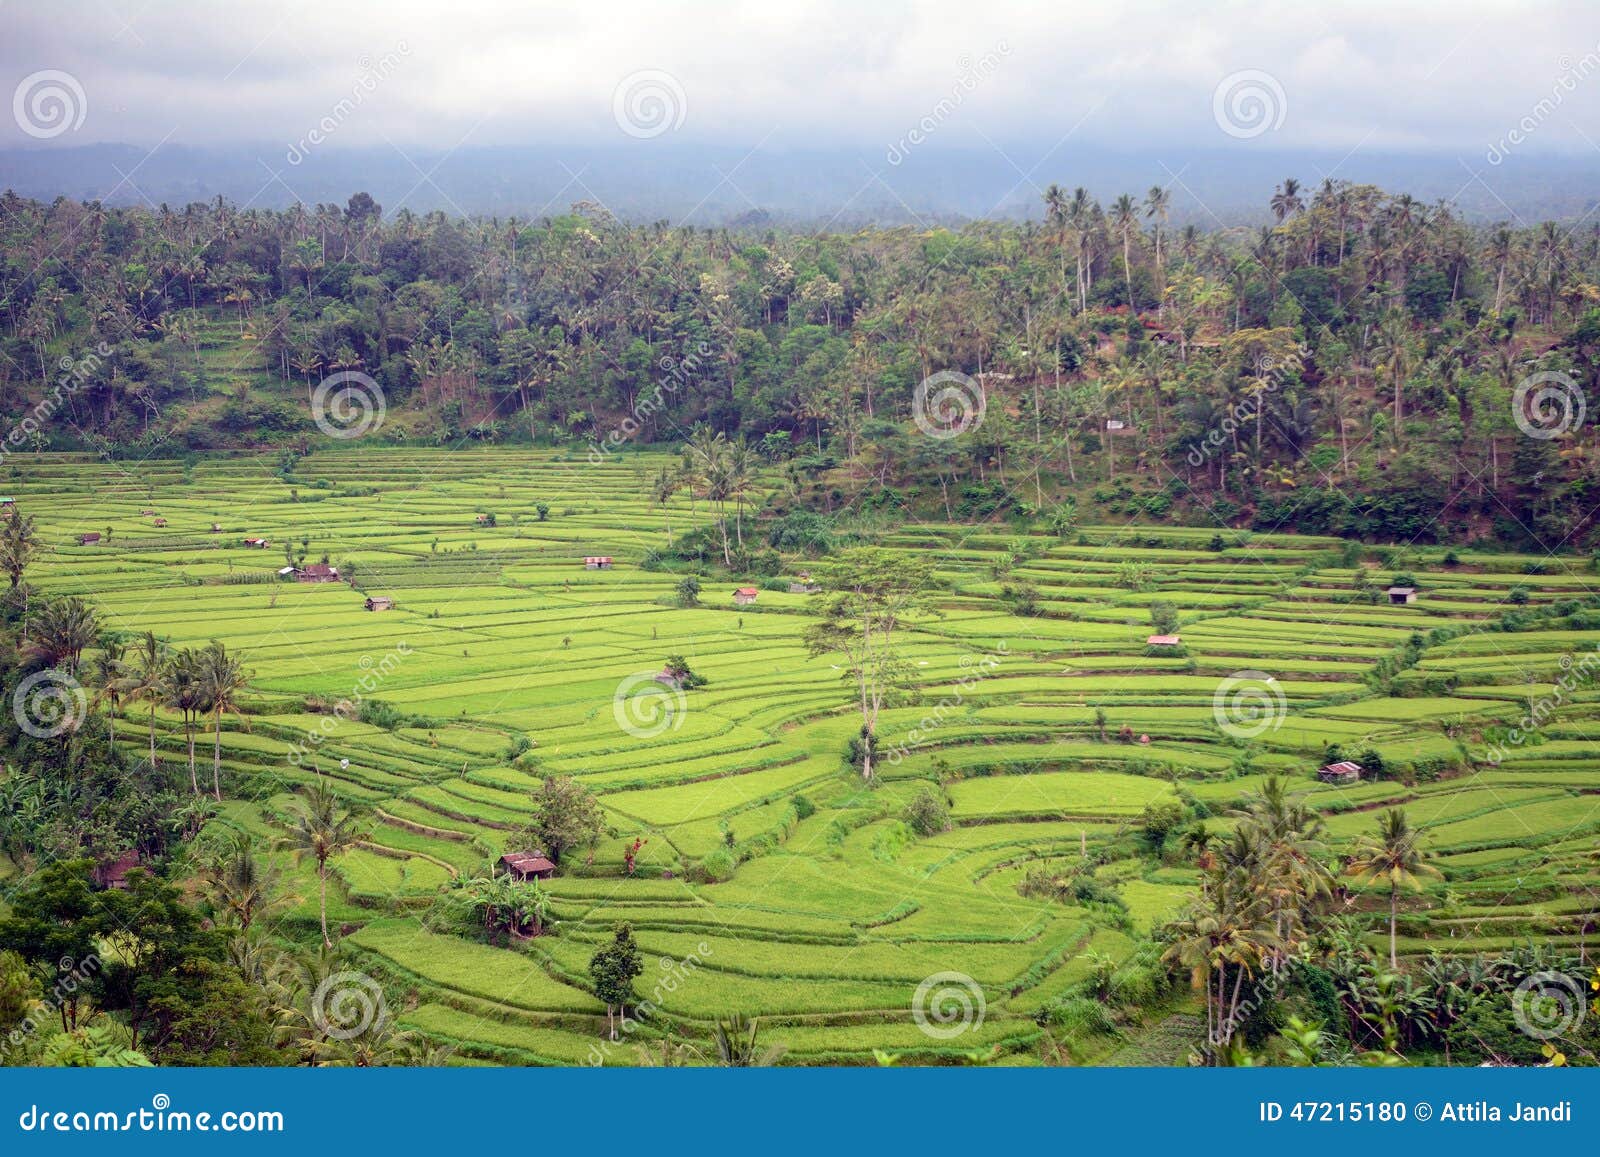 rice paddies, bukit jambul, bali, indonesia